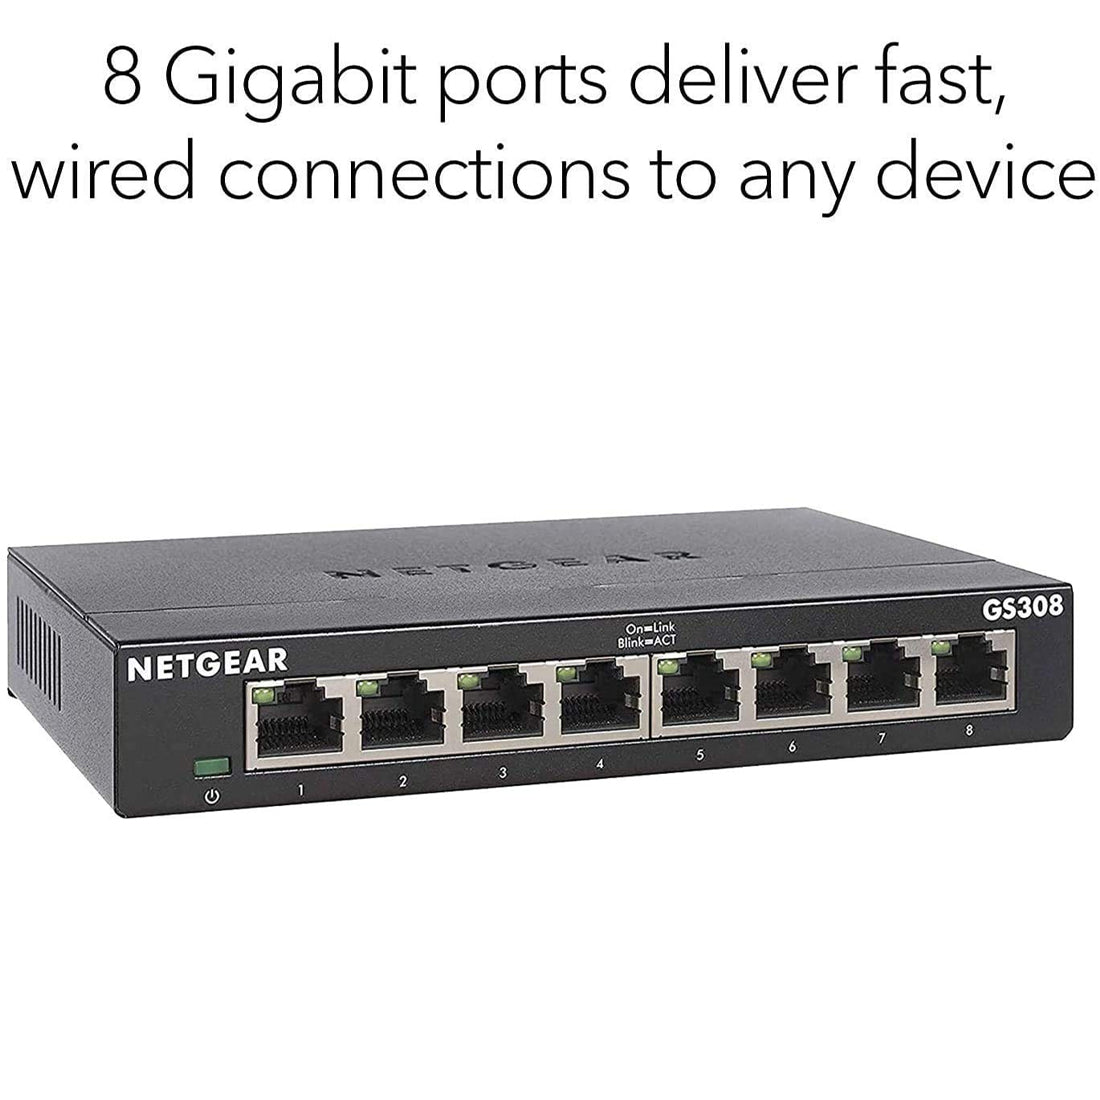 NETGEAR GS308 8 पोर्ट गीगाबिट ईथरनेट अप्रबंधित नेटवर्क हब